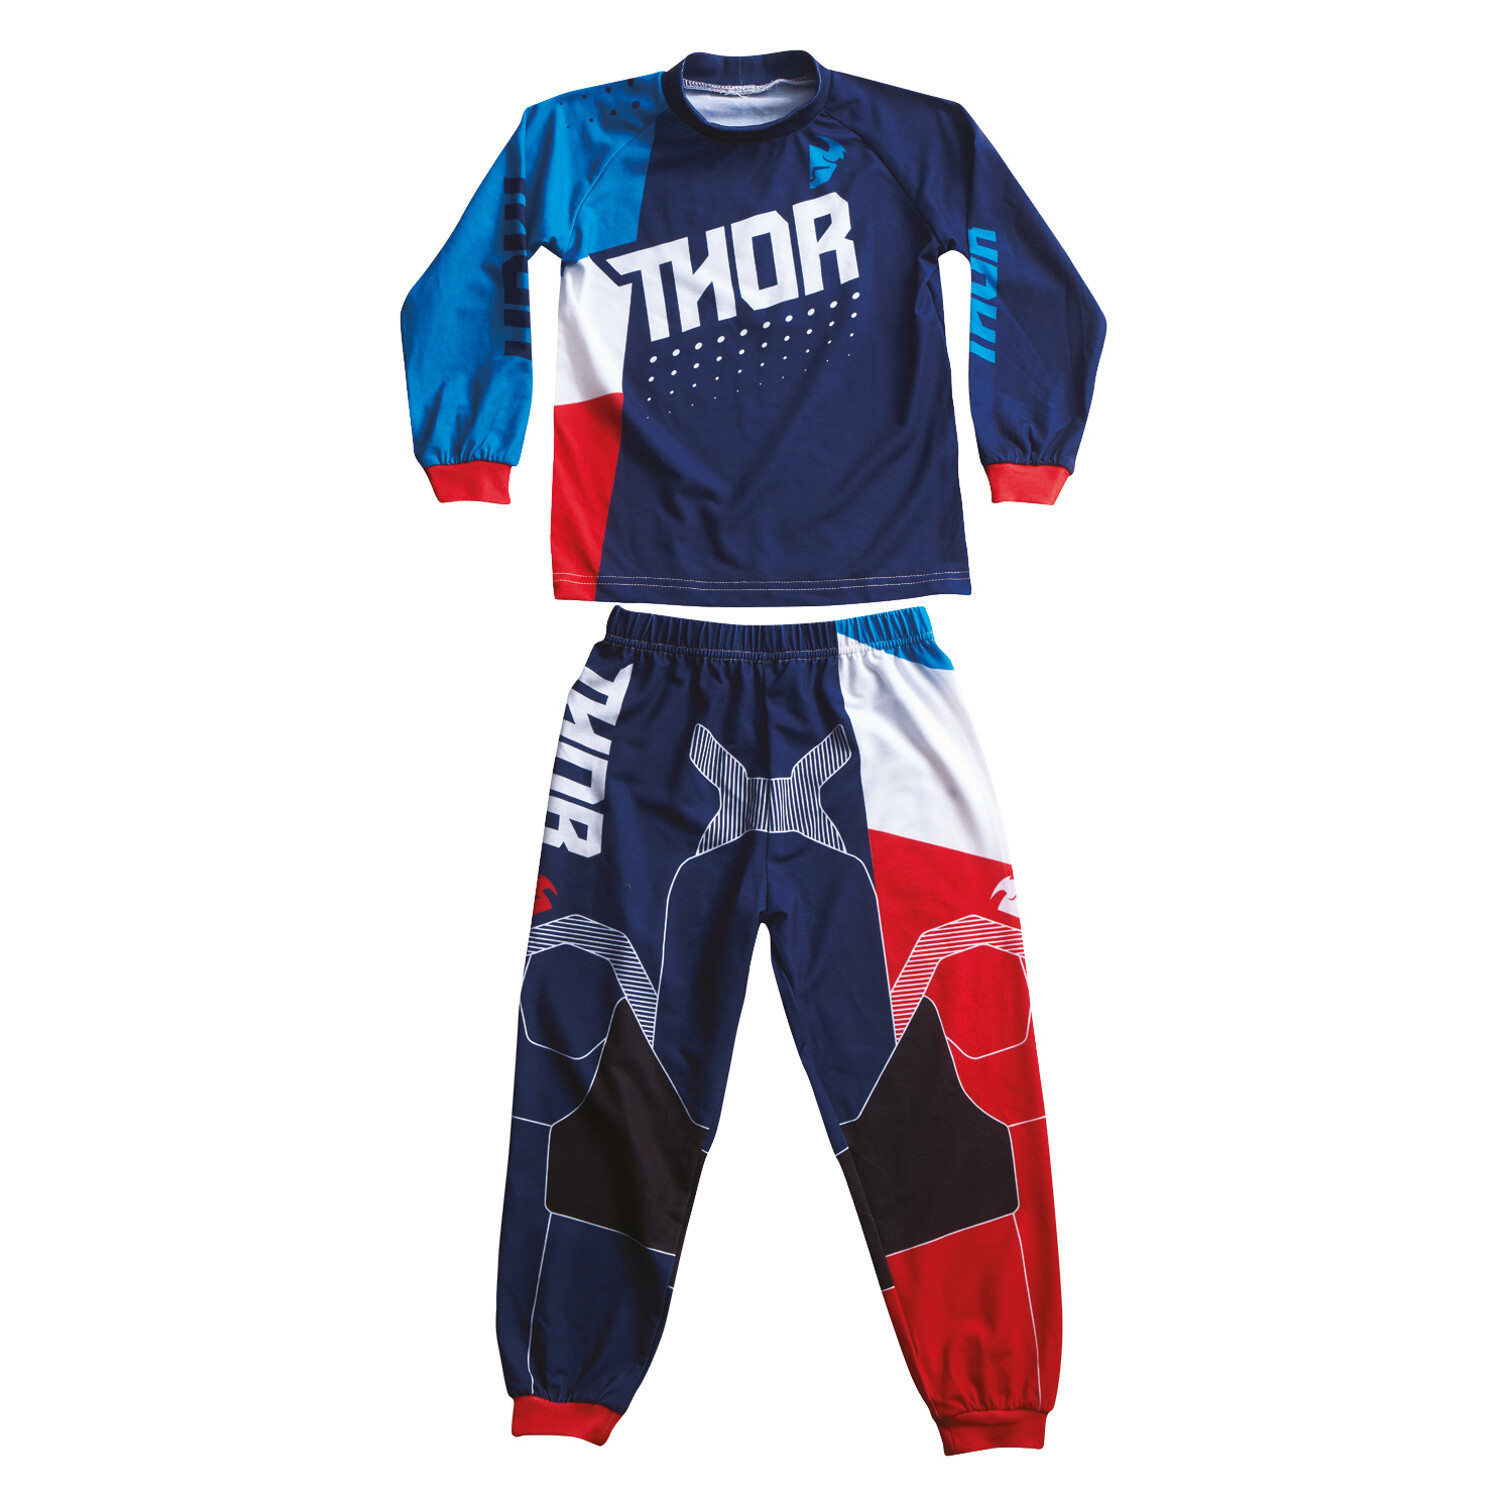 Thor Junior Pyjama Pajamas Blue/Red